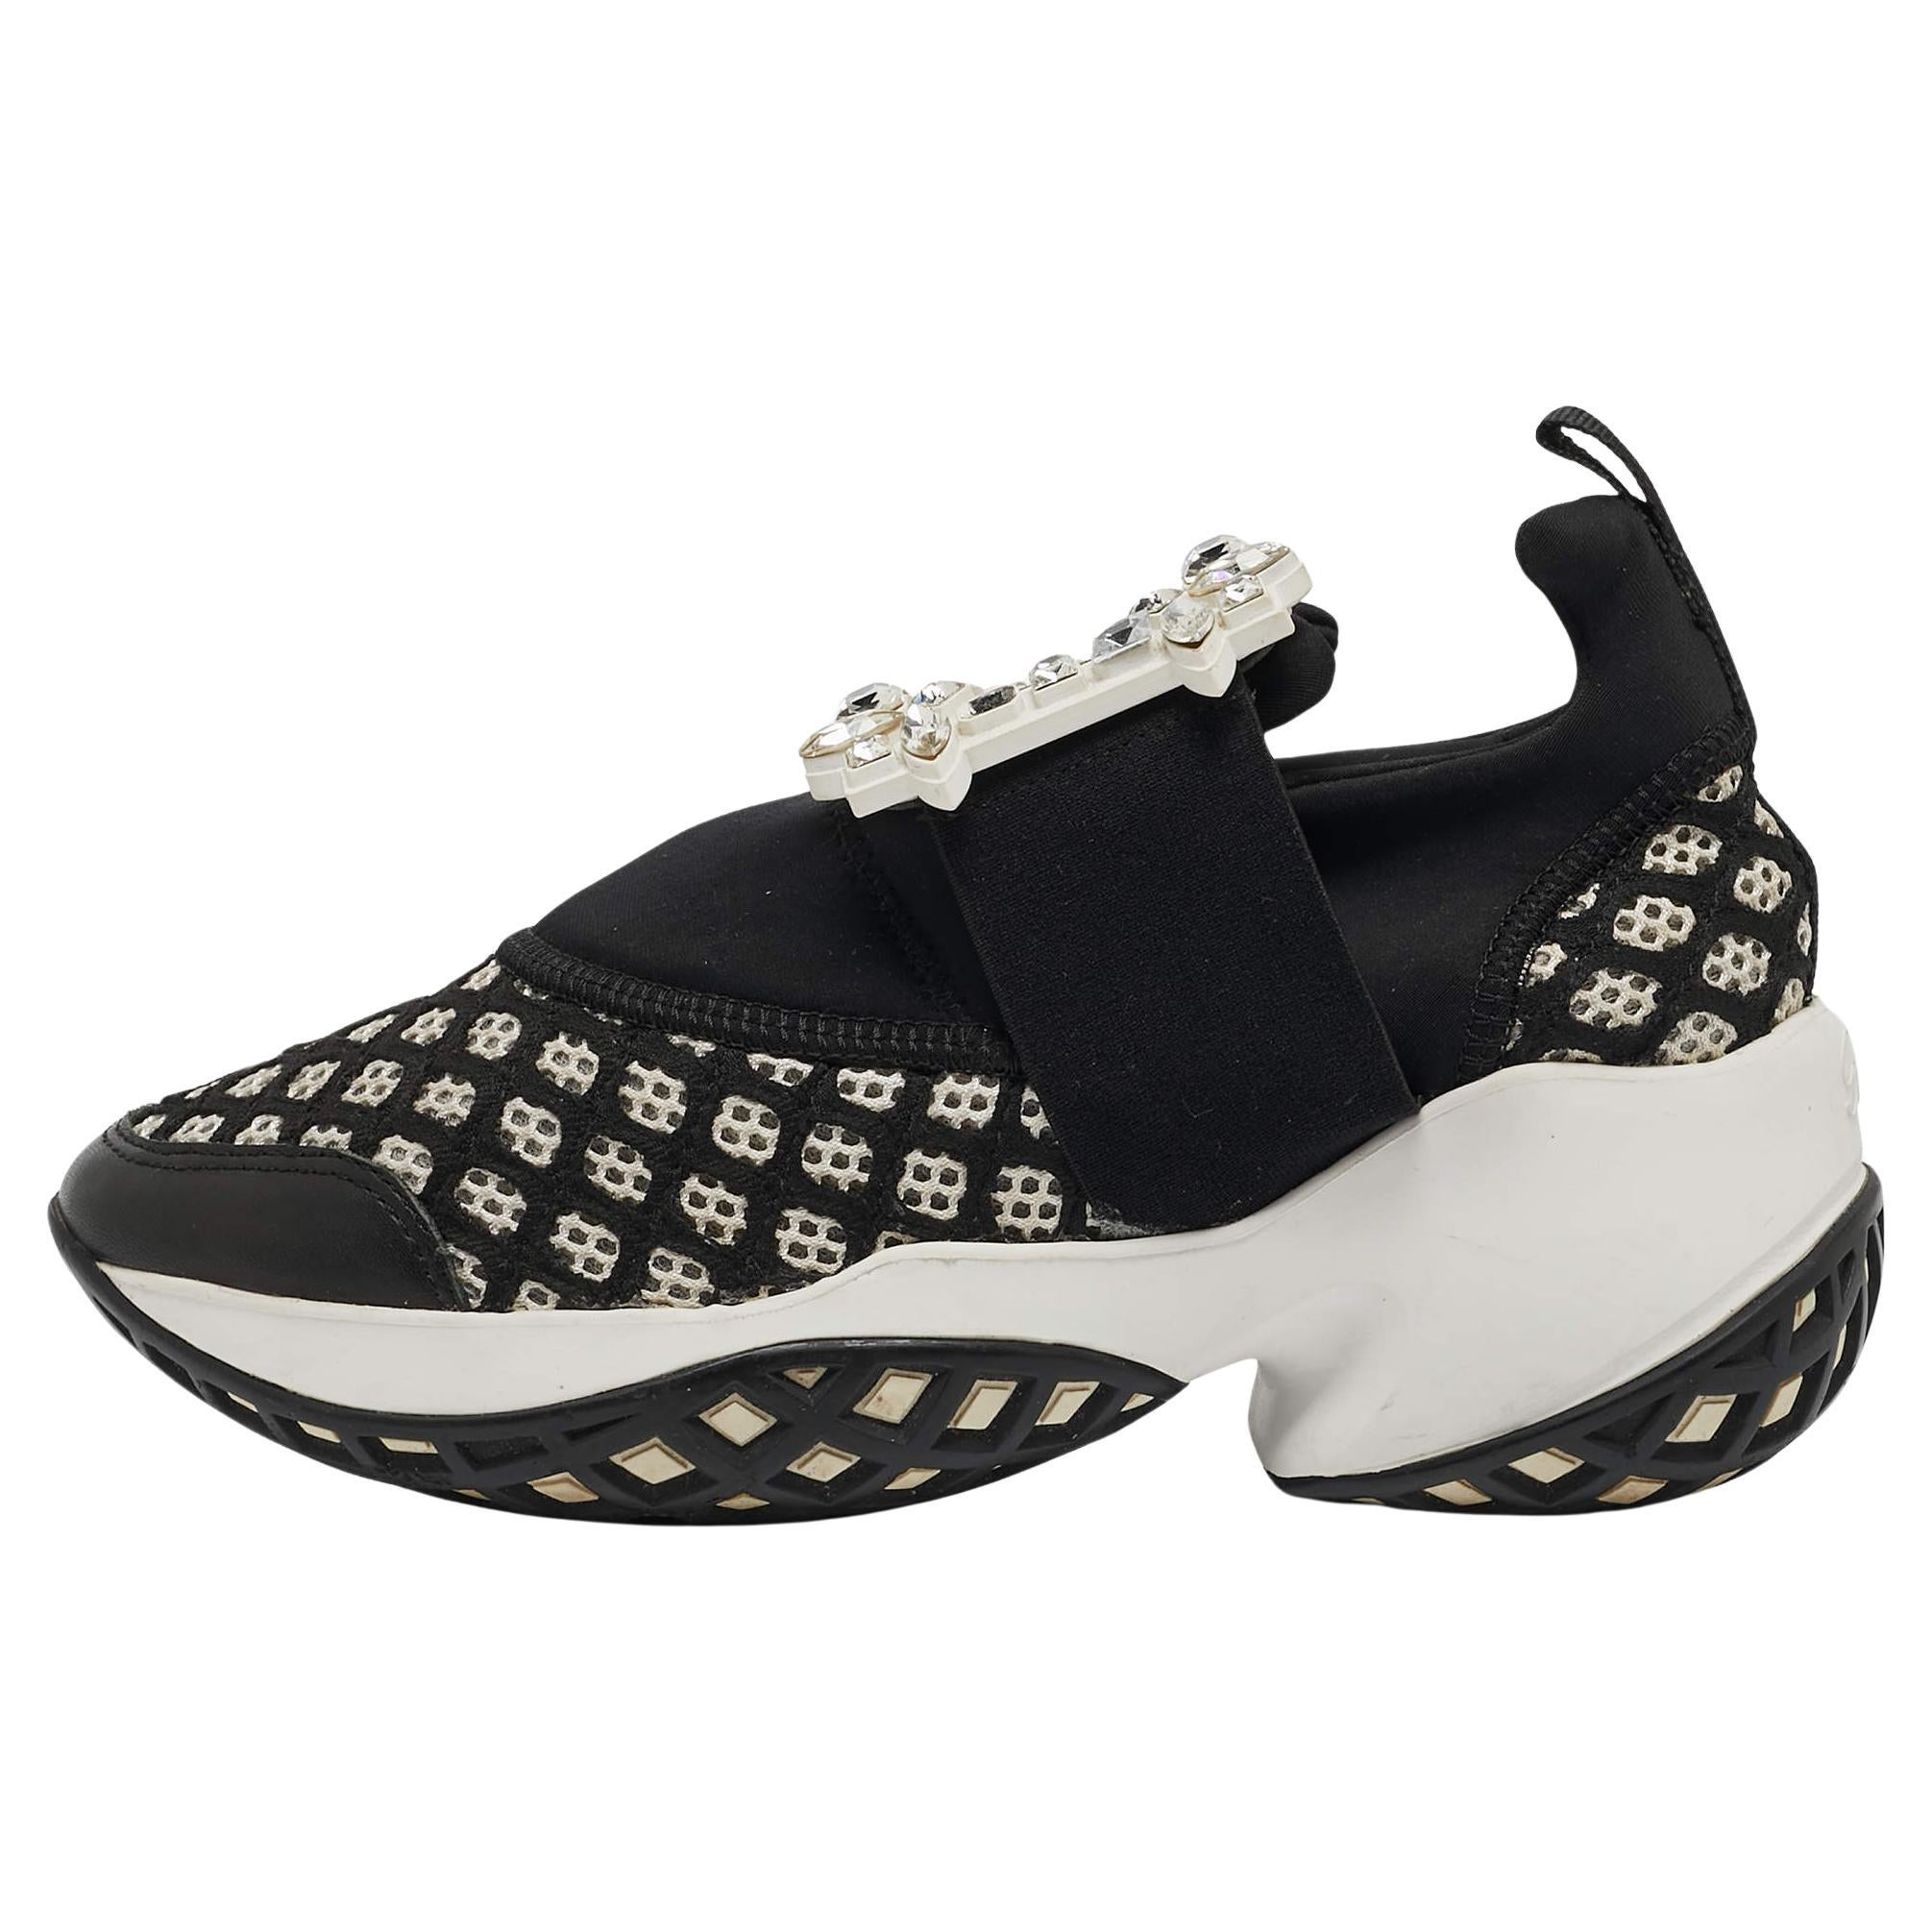 Roger Vivier Black/White Mesh and Neoprene Viv Run Strass Sneakers Size 35 For Sale